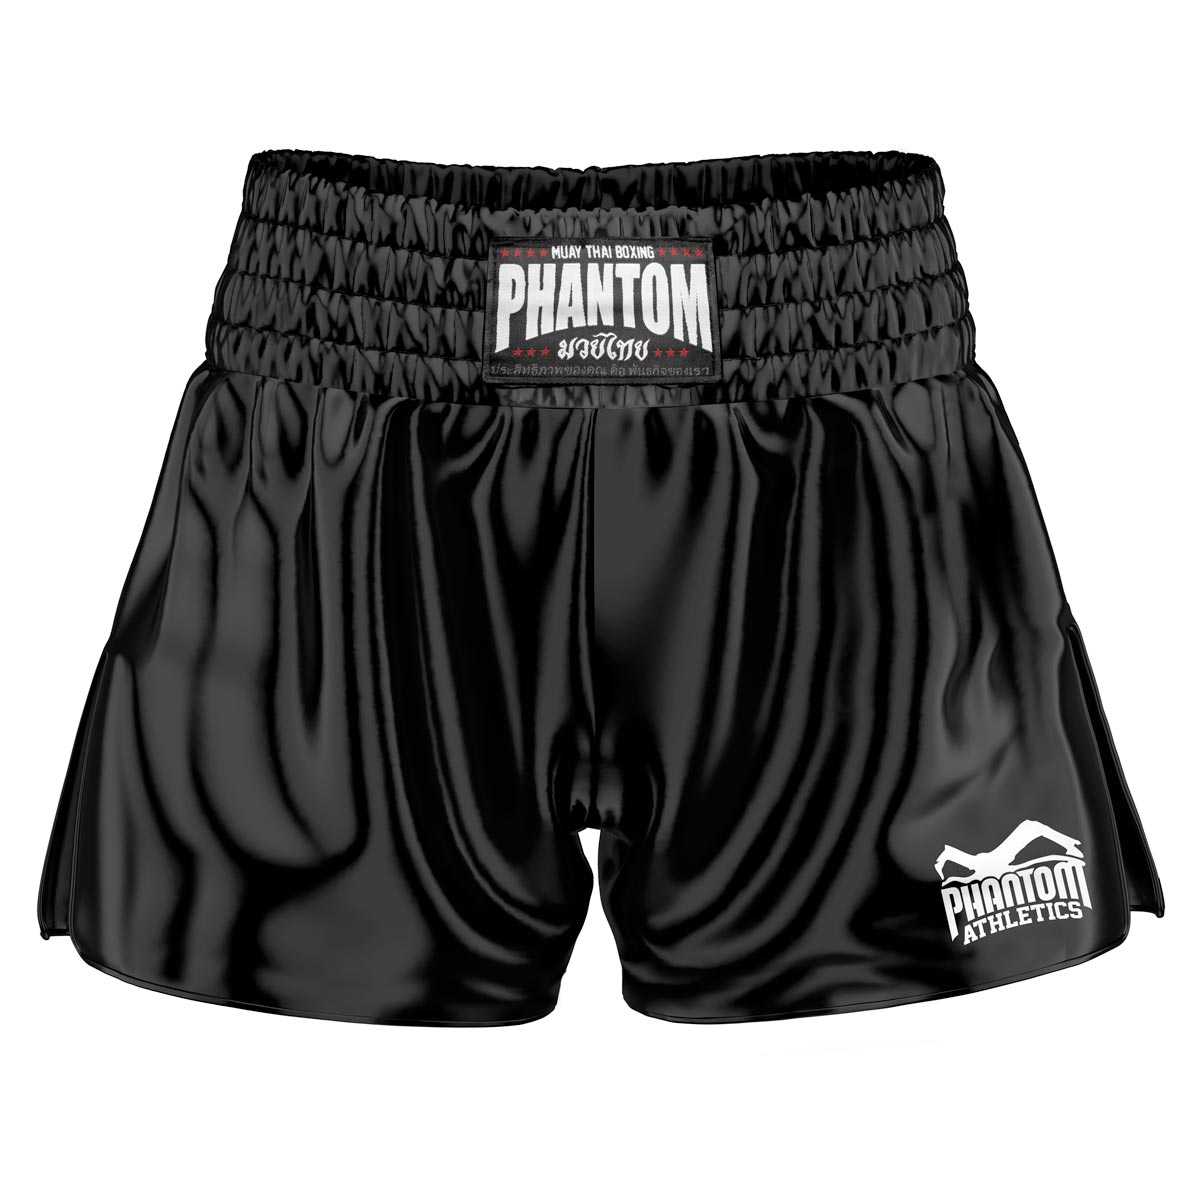 L'équipe Phantom Muay Thai Shorts en noir. Le tissu satiné old school vous donne une sensation originale de Thaïlande. Dans la qualité habituelle Phantom Athletics . Idéal pour vos entraînements et compétitions de boxe thaïlandaise.